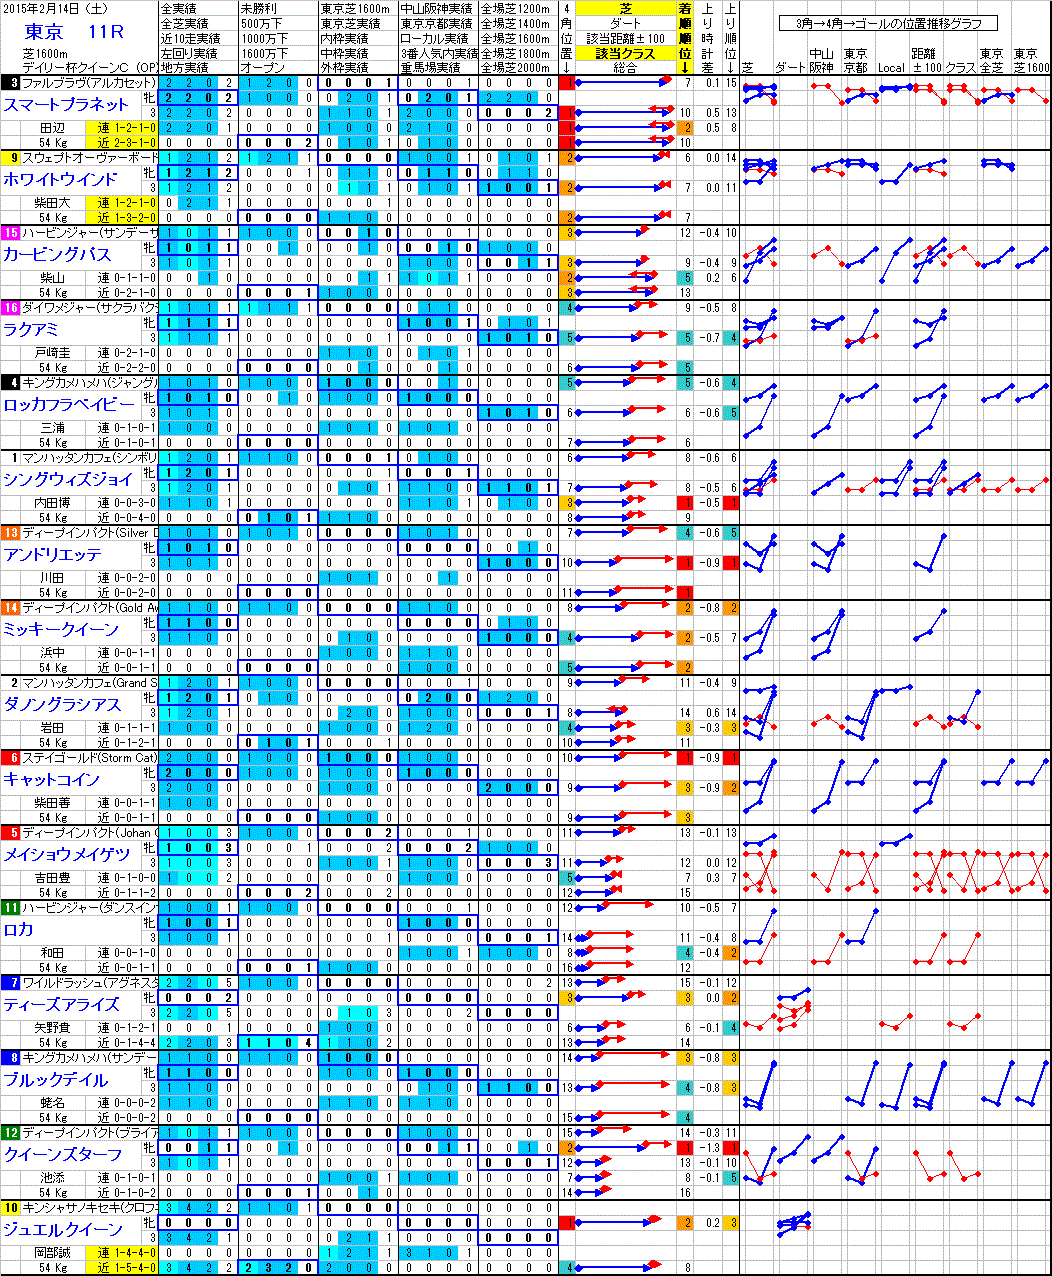 東京 2015年2月14日 （土） ： 11R － 分析データ